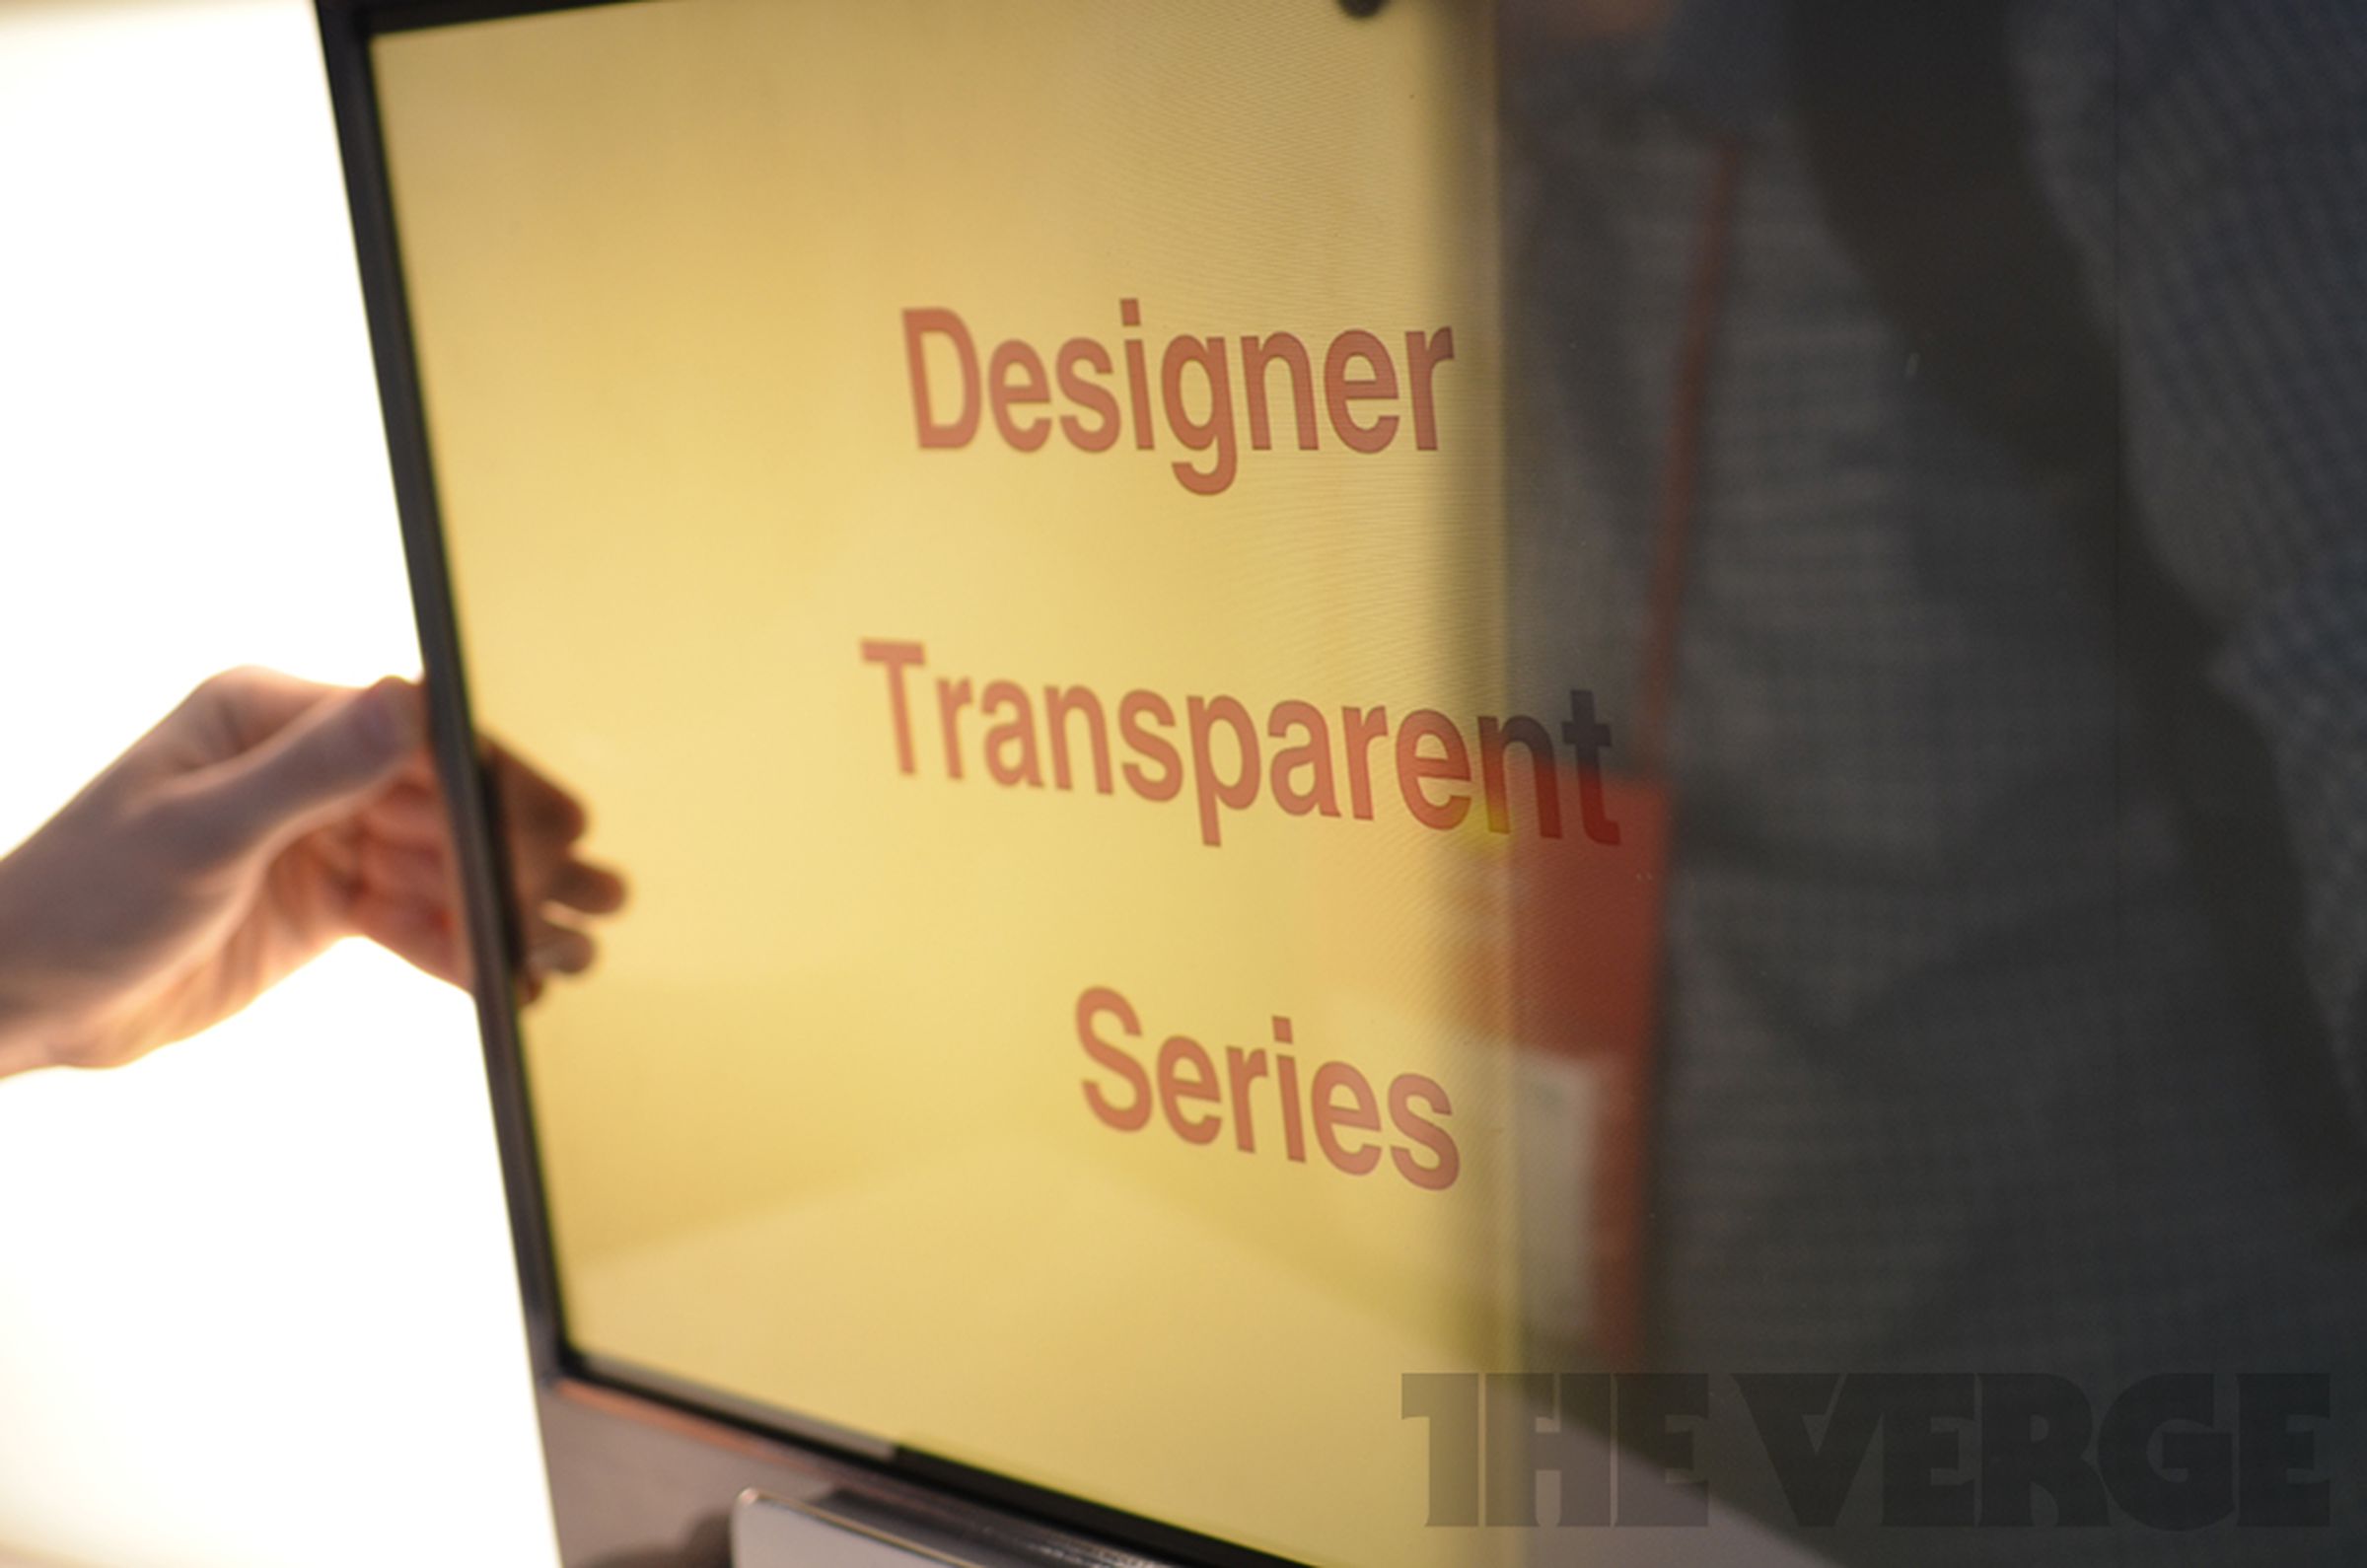 Haier Transparent OLED TV hands-on images